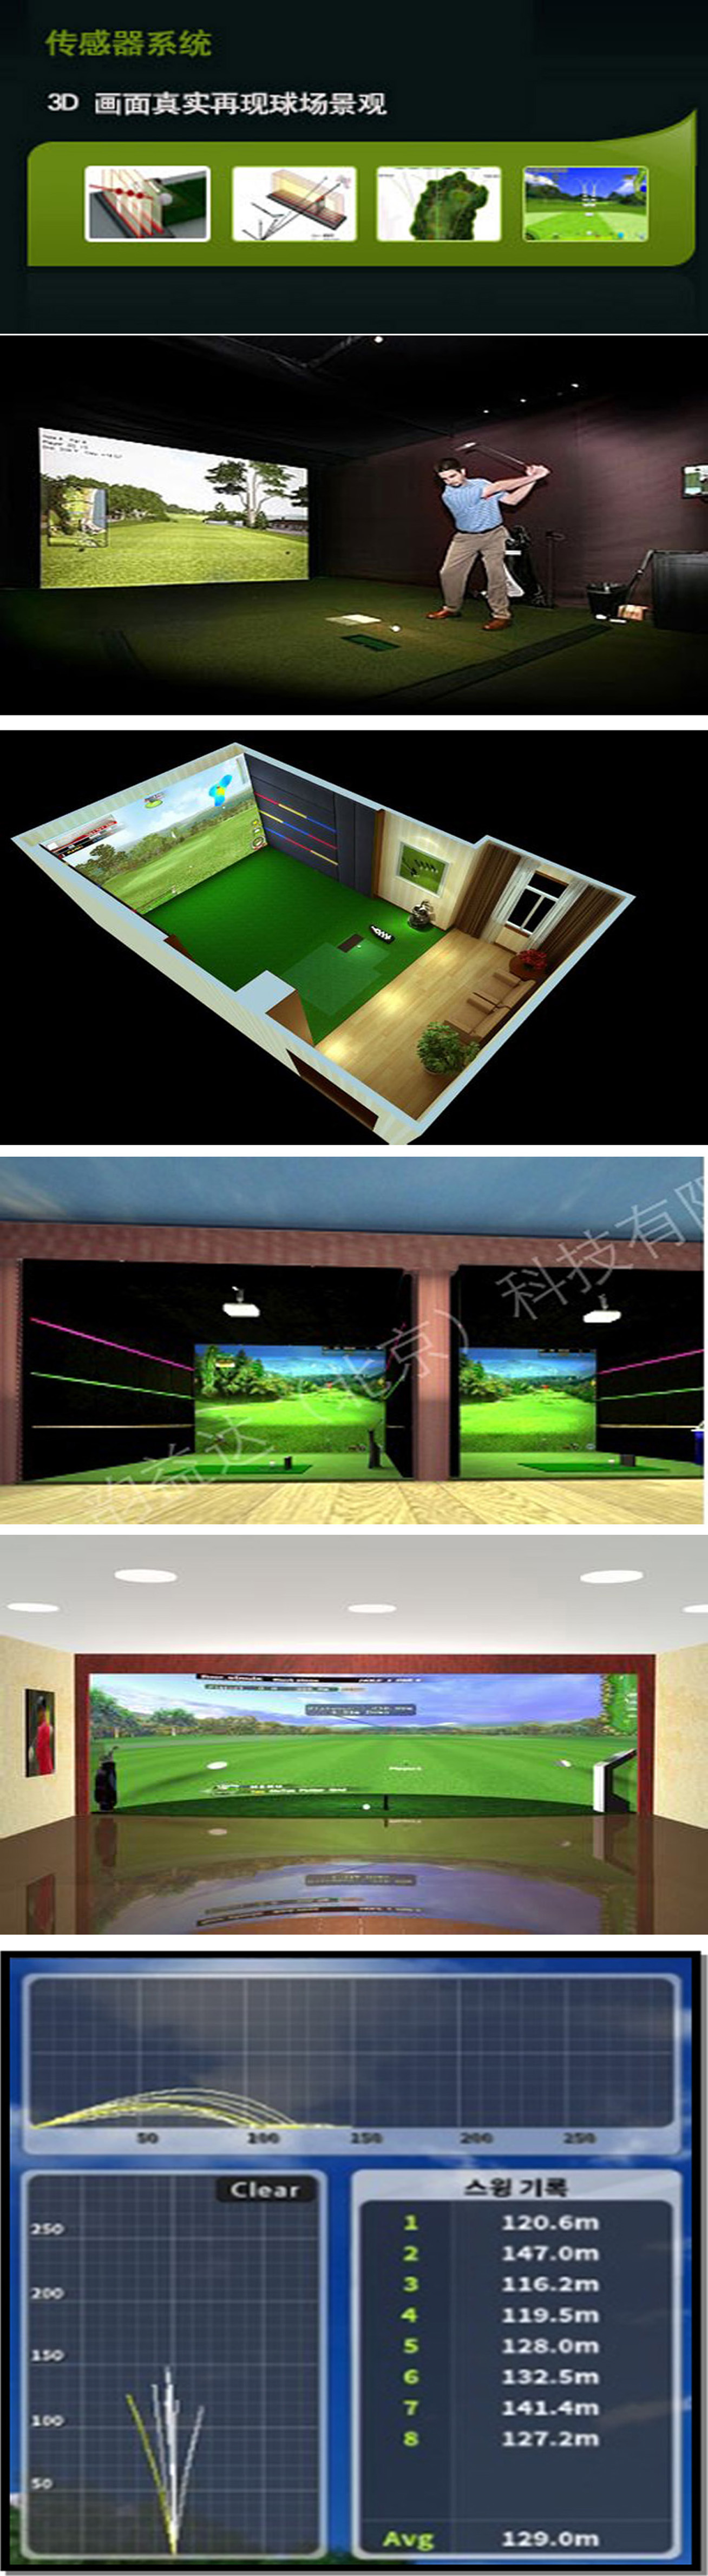 室内高尔夫模拟器 01.jpg